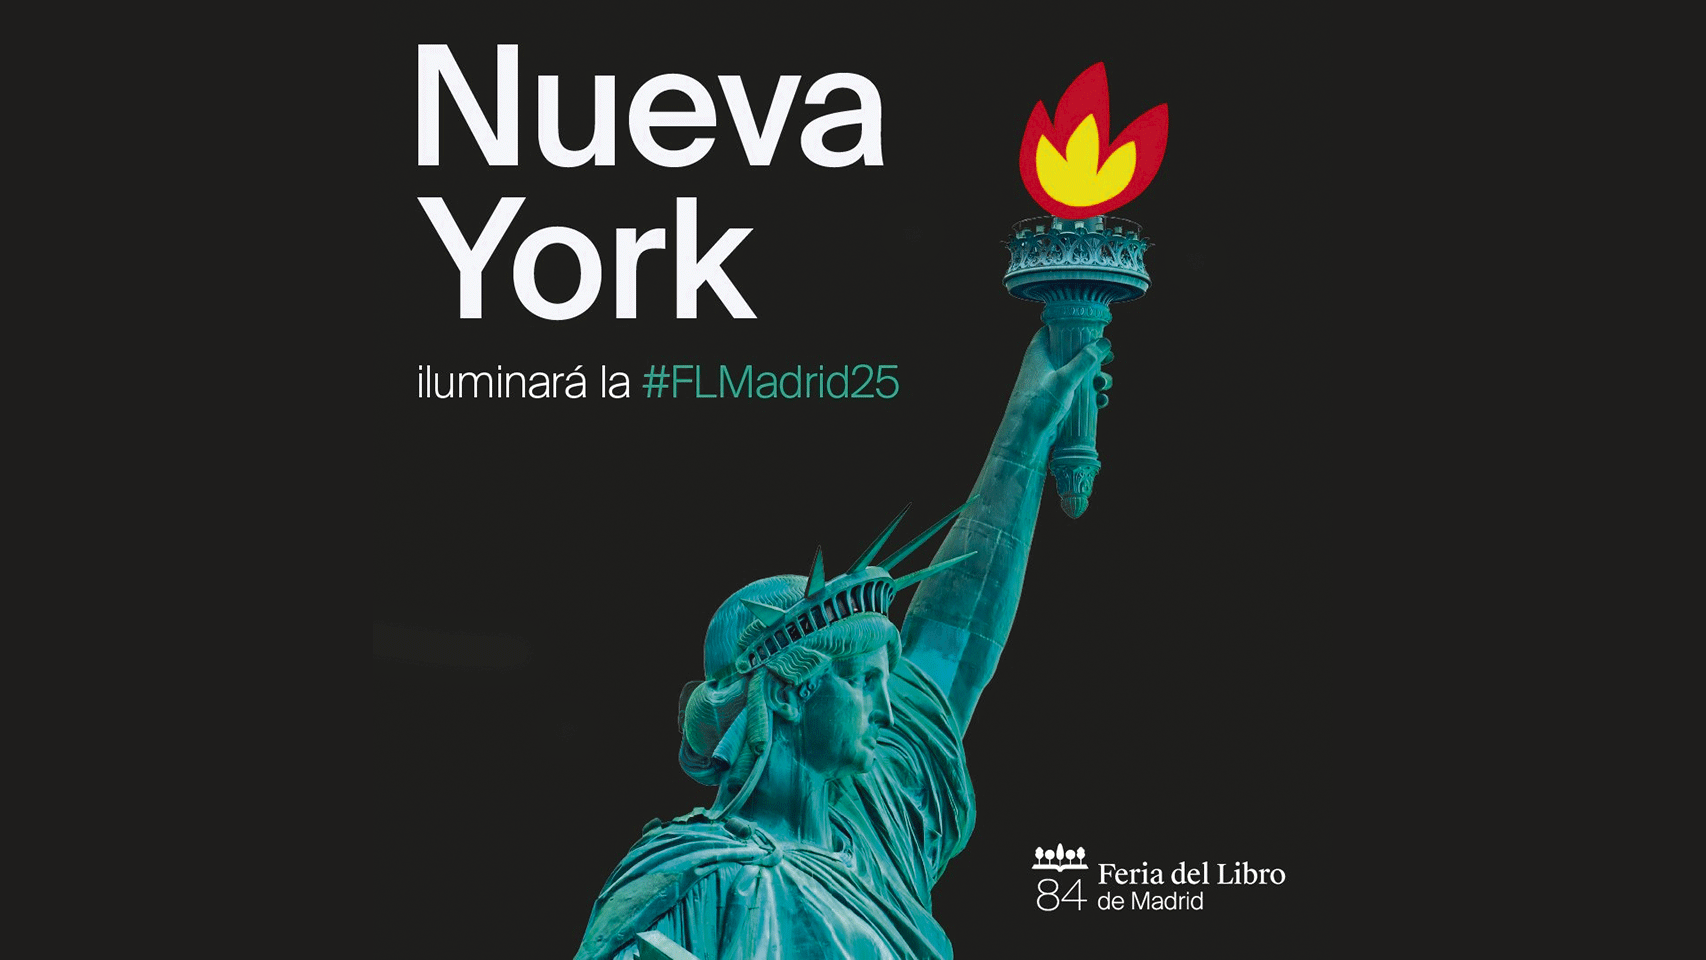 La directora de la Feria del Libro de Madrid, Eva Orúe, ha anunciado en rueda de prensa que Nueva York iluminará la cita del próximo año. Foto: Feria del Libro de Madrid